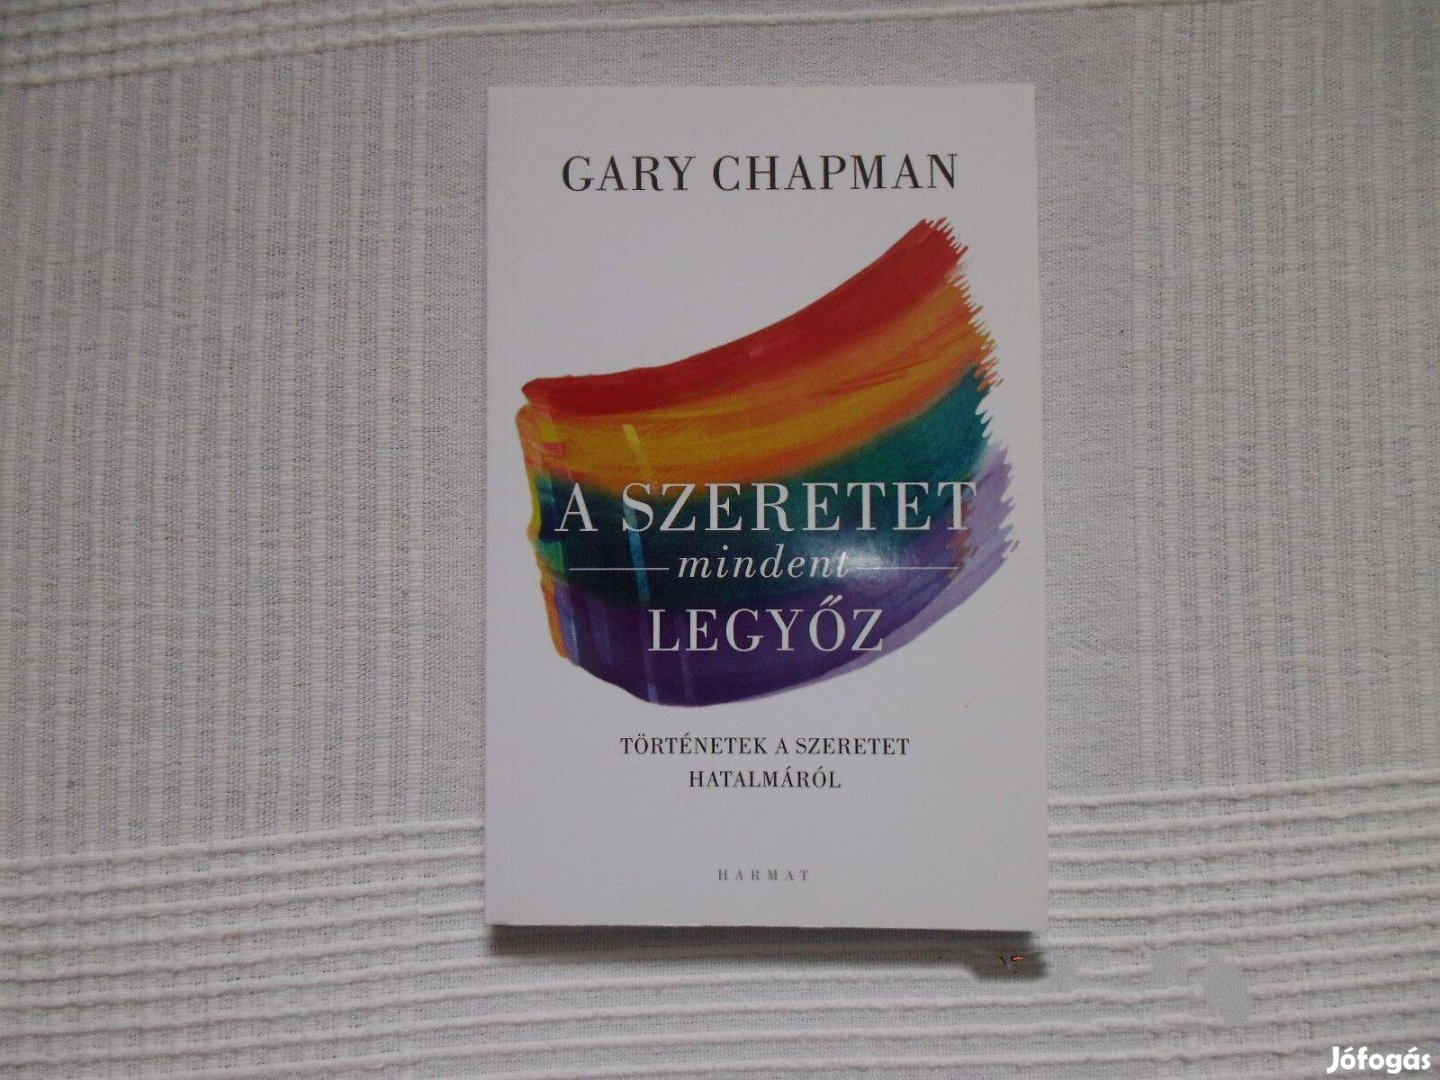 Gary Chapman: A szeretet mindent legyőz